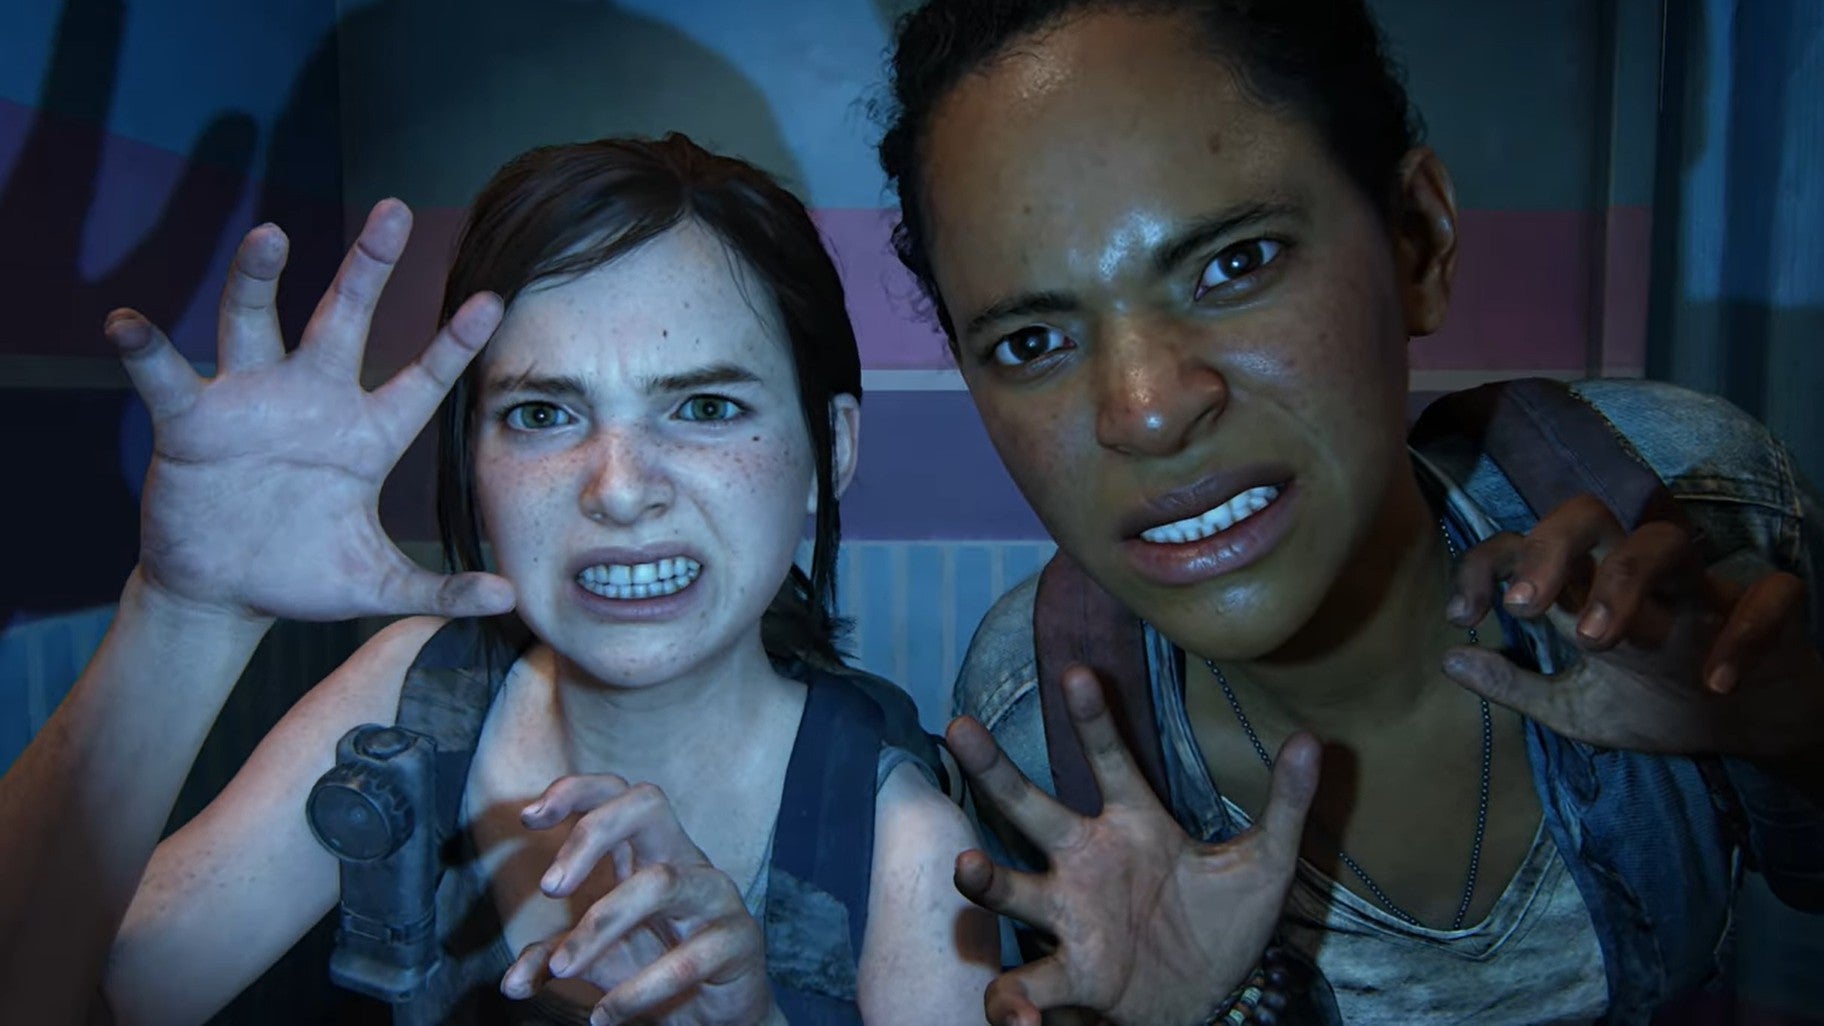 Imagen para Después de muchas filtraciones, Naughty Dog lanza nuevas imágenes oficiales del remake de The Last of Us